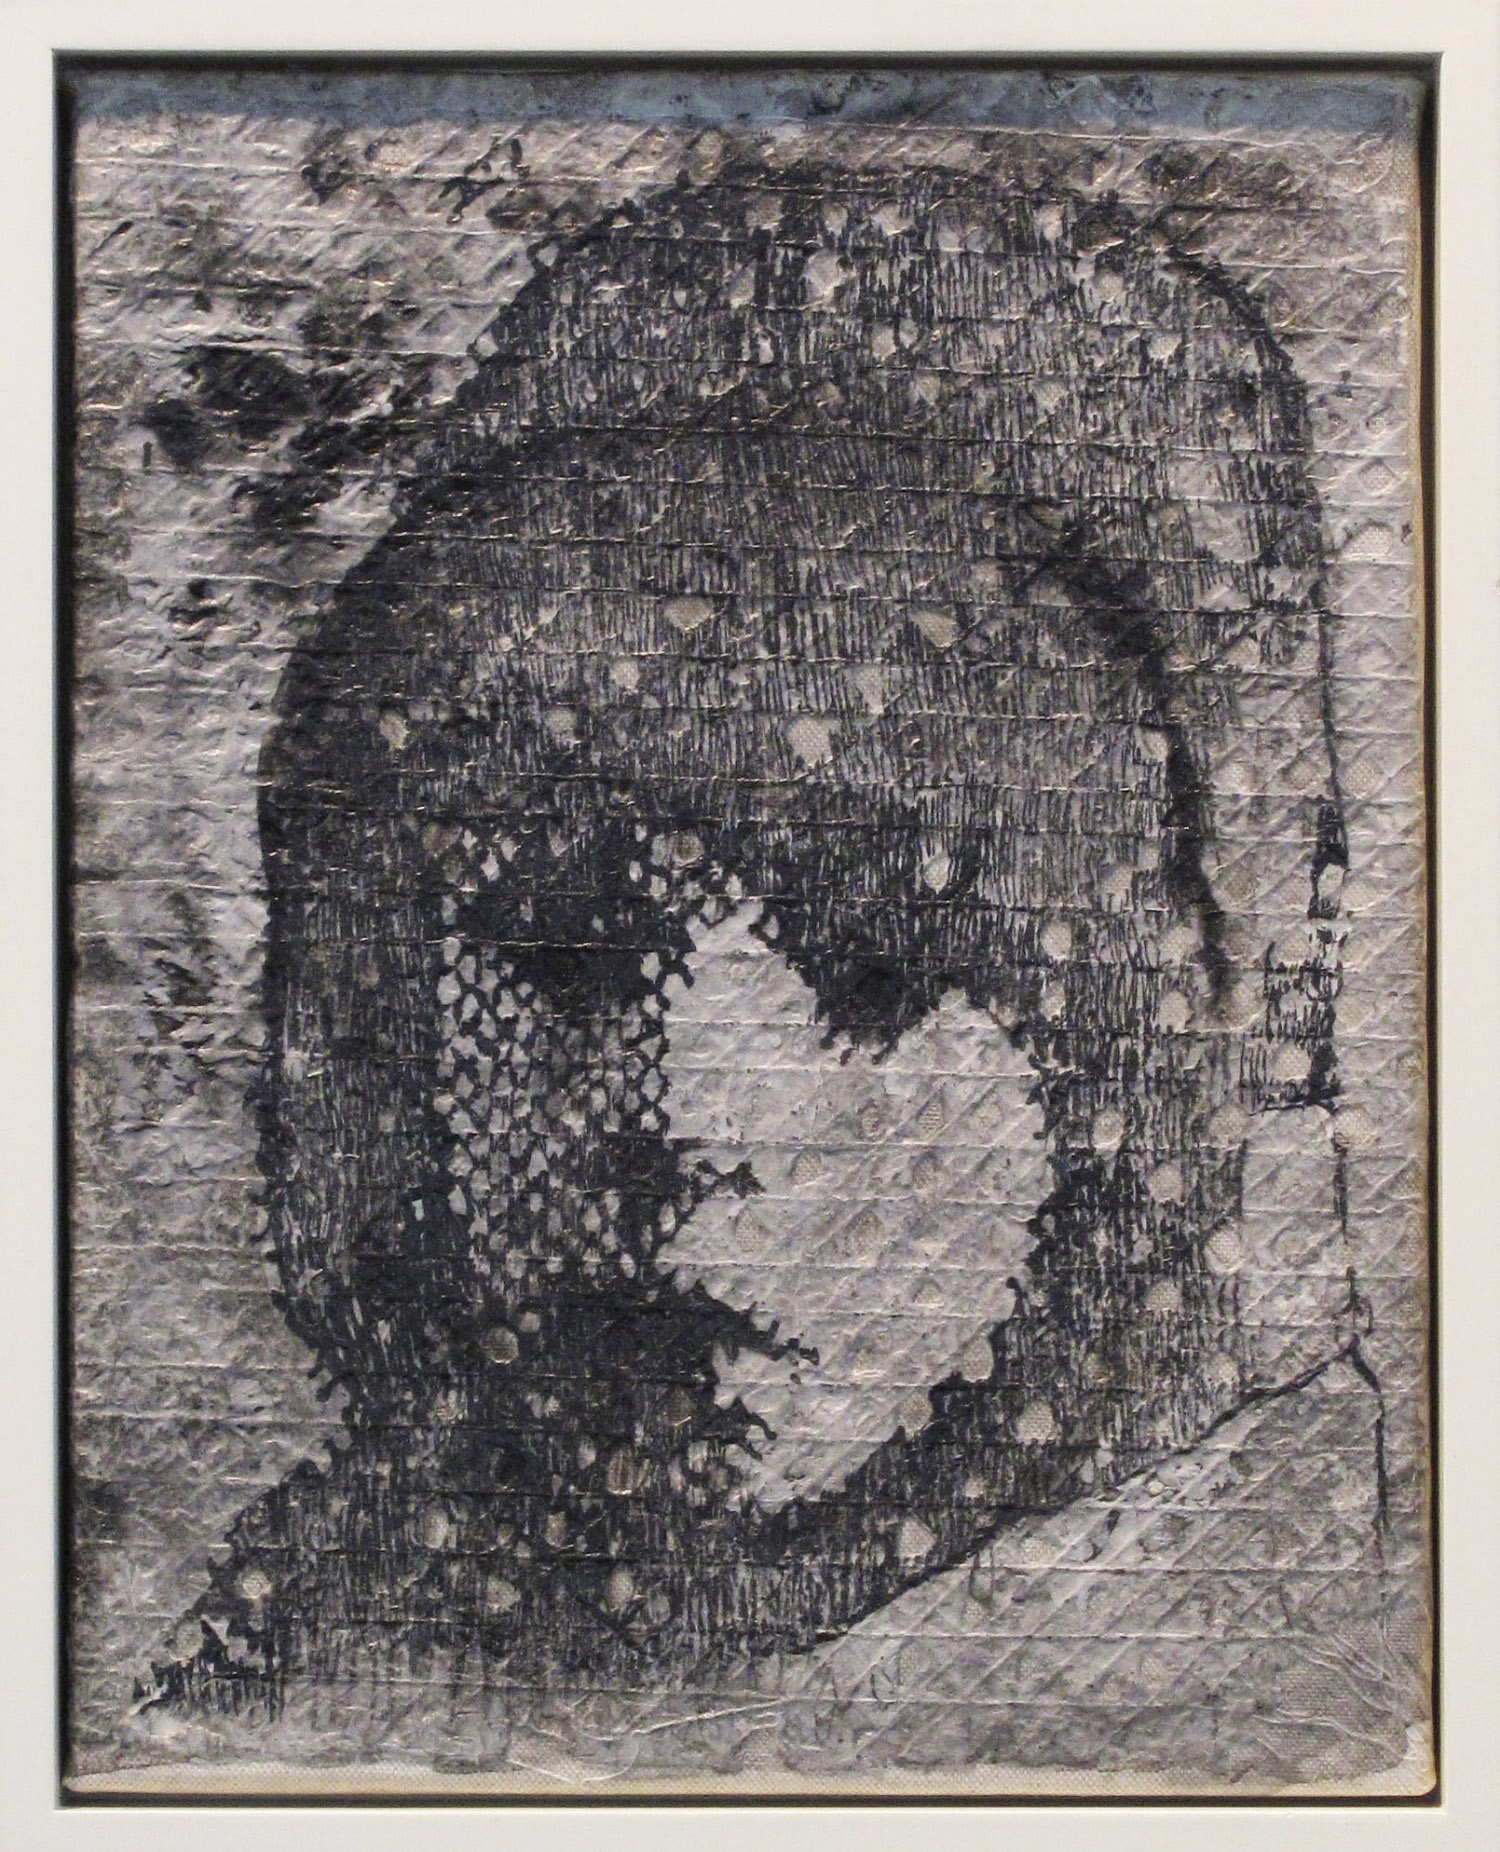 5bj(0) - Shrouded Child -inks on handmade  paper over canvas, 14x11 in. , 2011.jpg